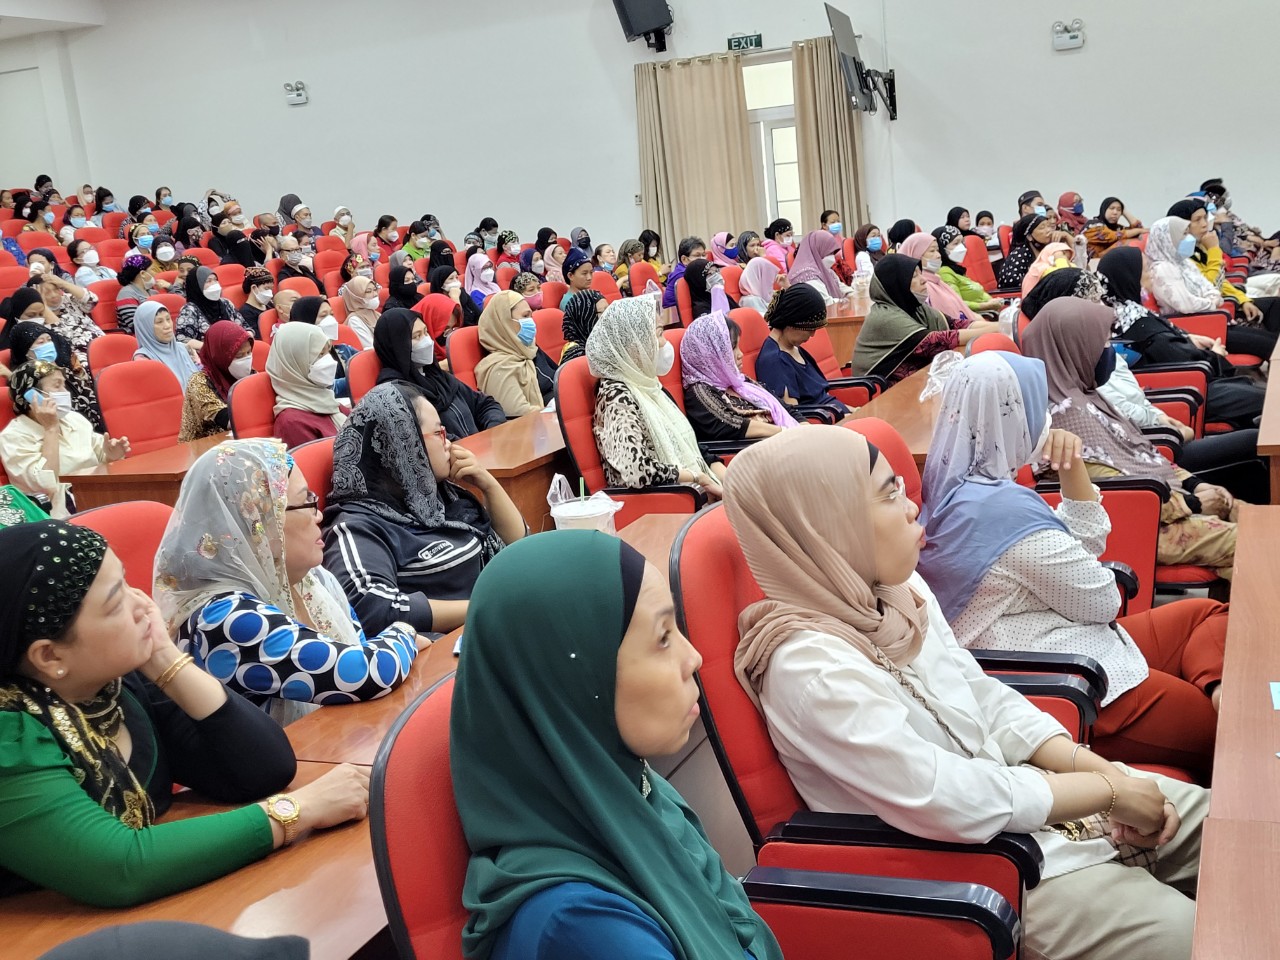 200 cán bộ, hội viên phụ nữ Chăm đã đến tham dự buổi họp mặt mừng năm mới của người Chăm Islam